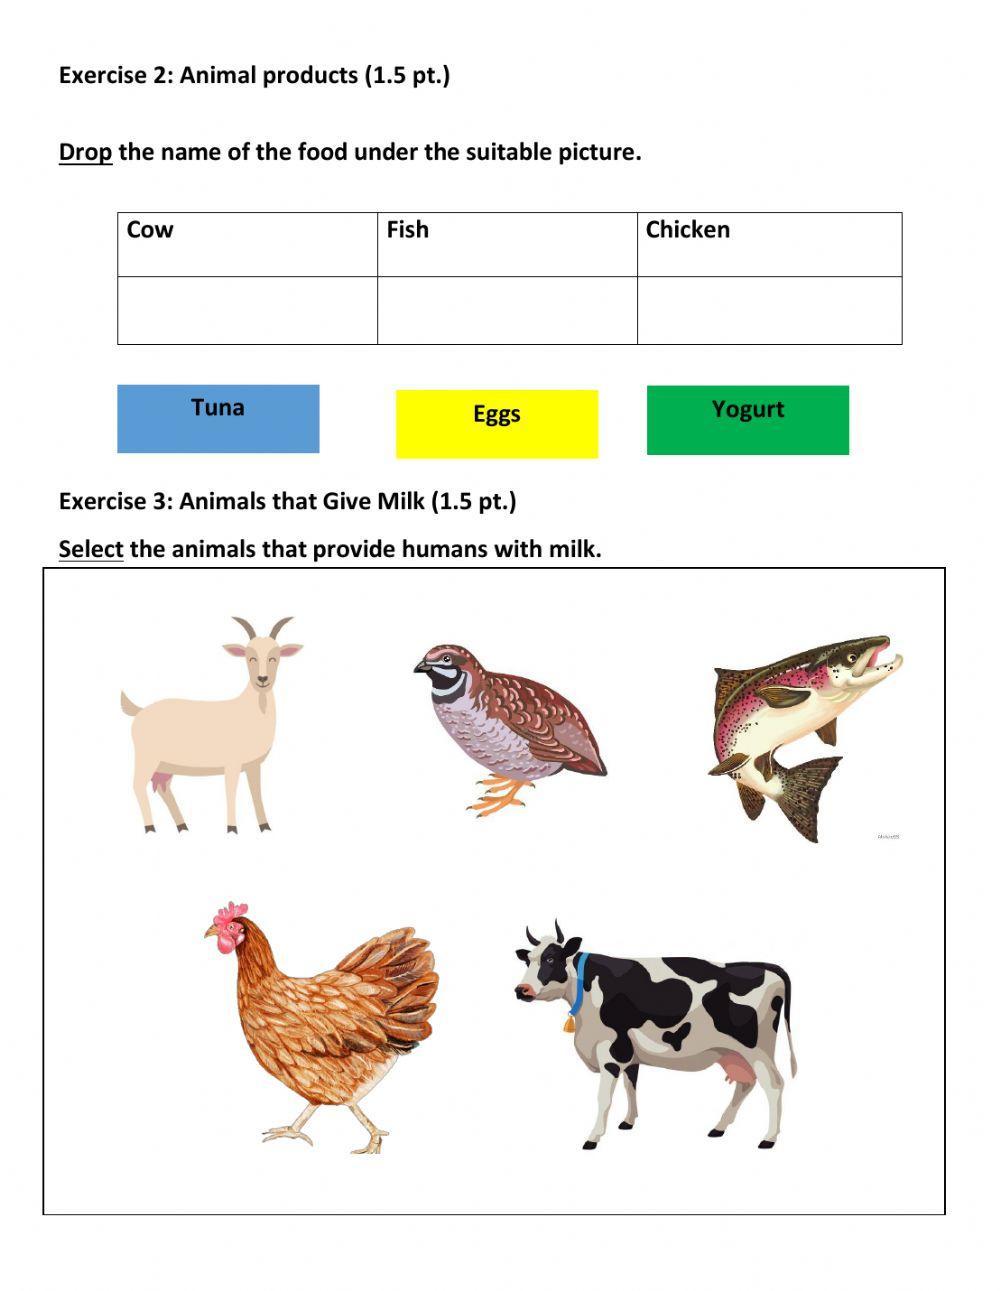 Quiz 3 Benefits of Animals: Food Source